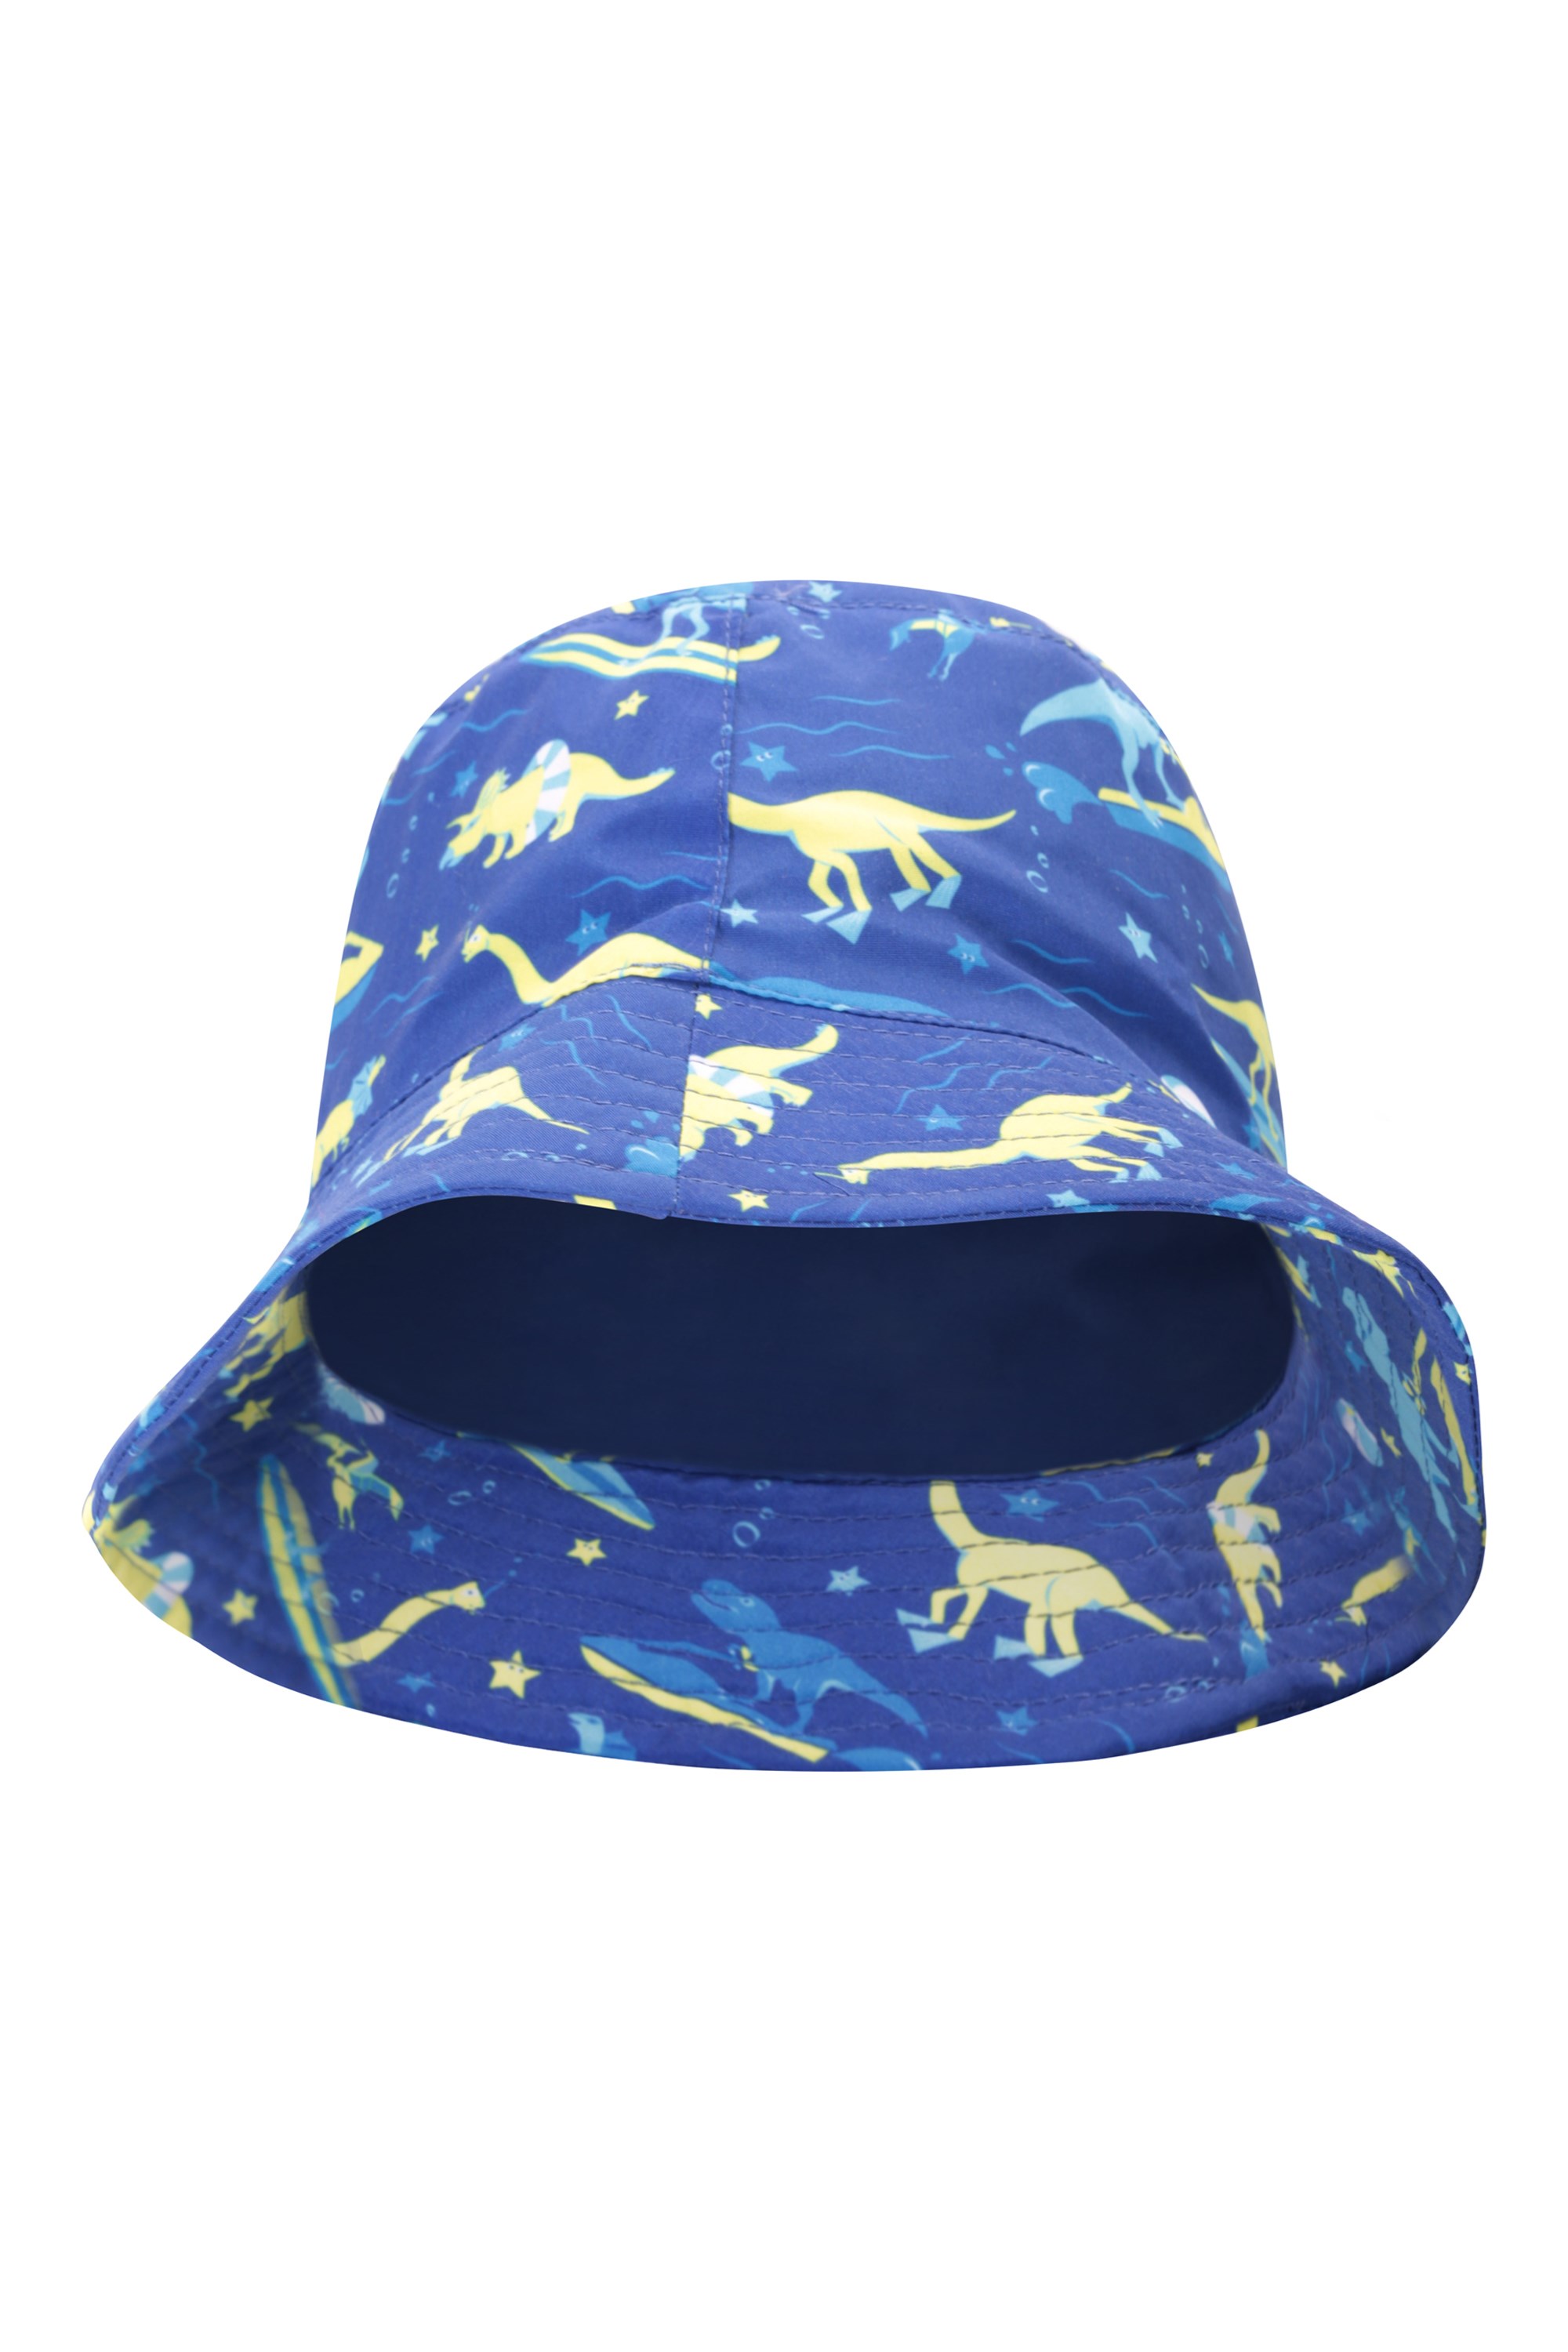 Printed Kids Bucket Hat - Blue